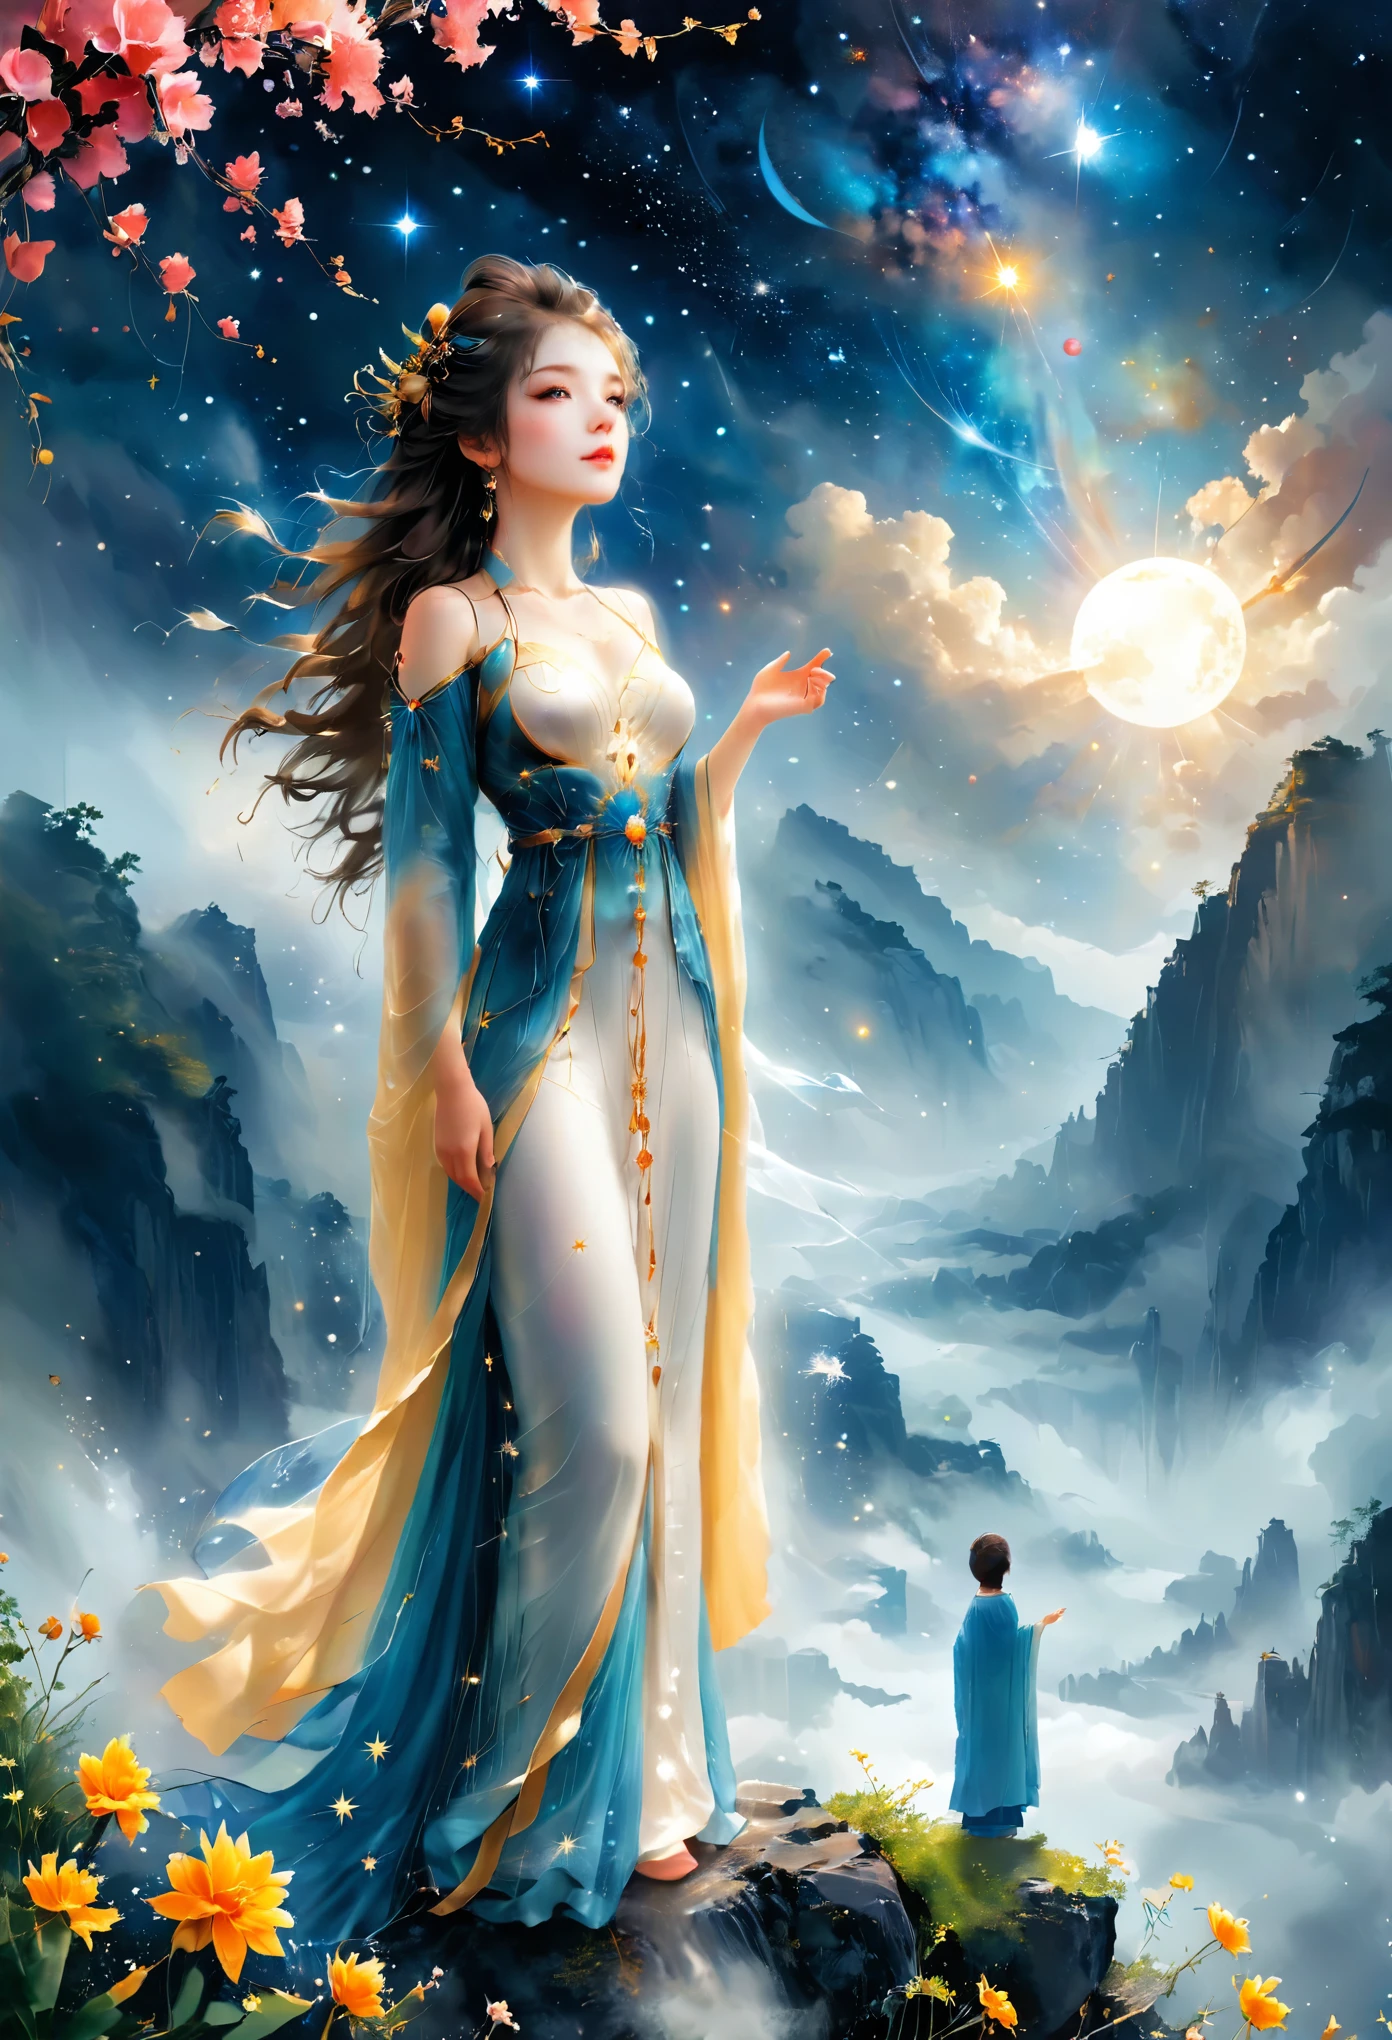 أسلوب التوضيح لـ Cai GuoRUN, 1فتاة, امرأة ترتدي فستانًا طويلًا تقف على منحدر وتنظر إلى السماء المرصعة بالنجوم, إلهة الفضاء, آلهة درب التبانة, إلهة السماء, أثيري نجمي, حلم, ساحر سماوي جميل, لوحة خيالية جميلة, فن الخيال الجميل, الخيال أثيري, فن الخيال الجميل, الخيال الفني الرقمي, ساحرة وعالم آخر, جمال الخيال, الفن الجميل من أوكتان，الترا اتش دي，الضوء الحجمي，الإضاءة الطبيعية الناعمة, (حساسة للغاية:1.2, التركيز تفقد:1.2, زاهى الألوان, إضاءة السينما, chiaroscuro,تتبع الأشعة), تحفة, غنية للغاية,مفصلة للغاية,8 كيلو, 1cgrssh1